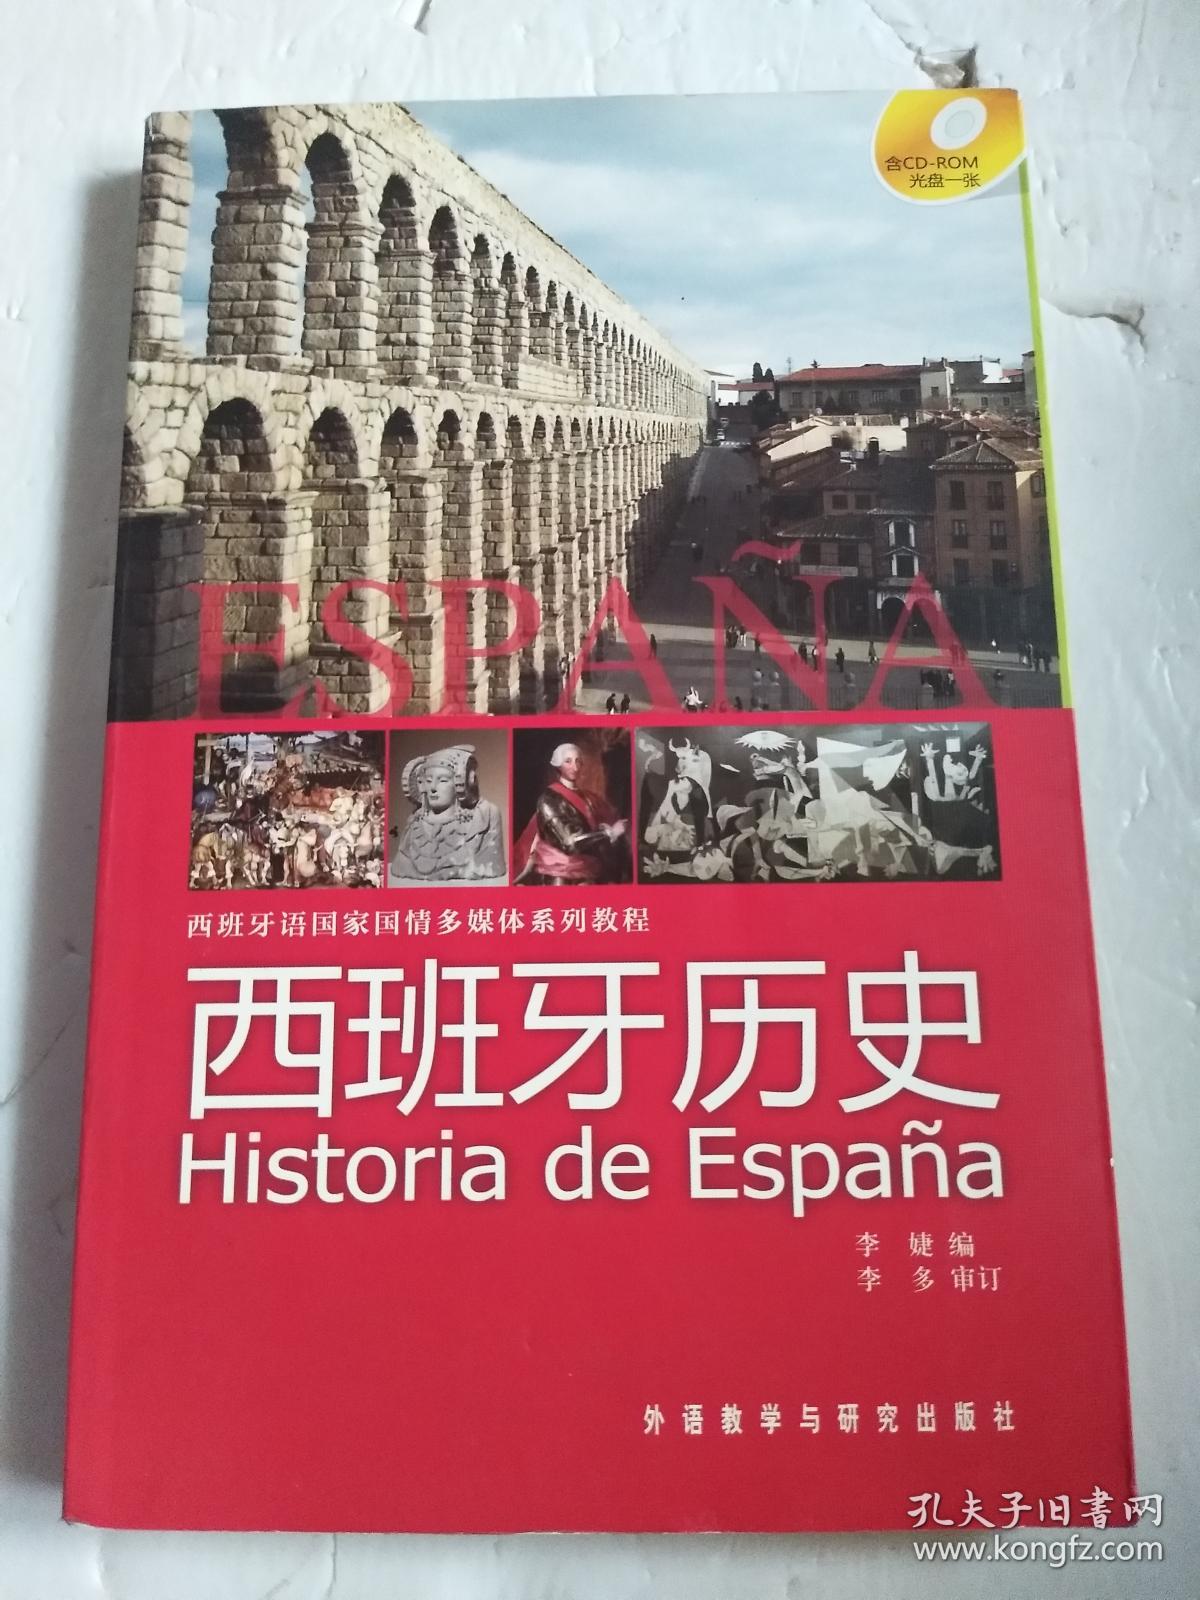 西班牙语国家国情多媒体系列教程:西班牙历史